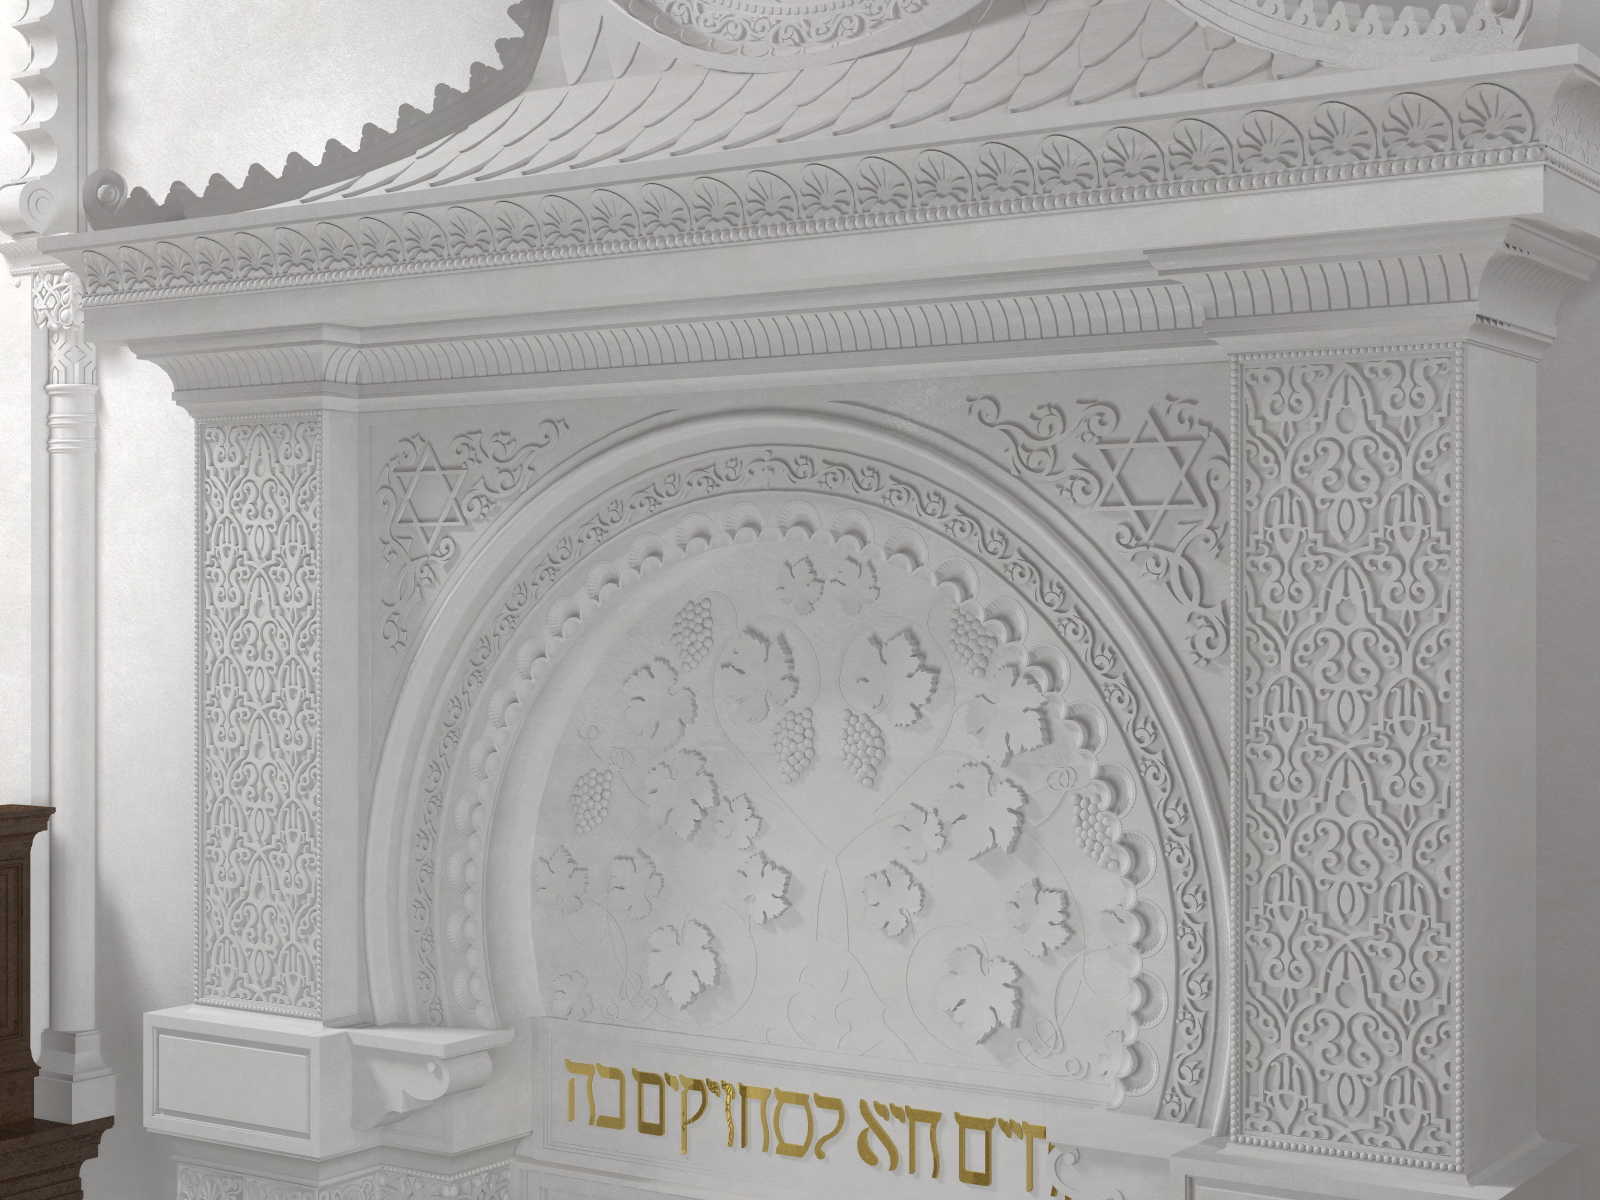 Virtuelle Rekonstruktion der Synagoge Jablonec nad Nisou (CZ)